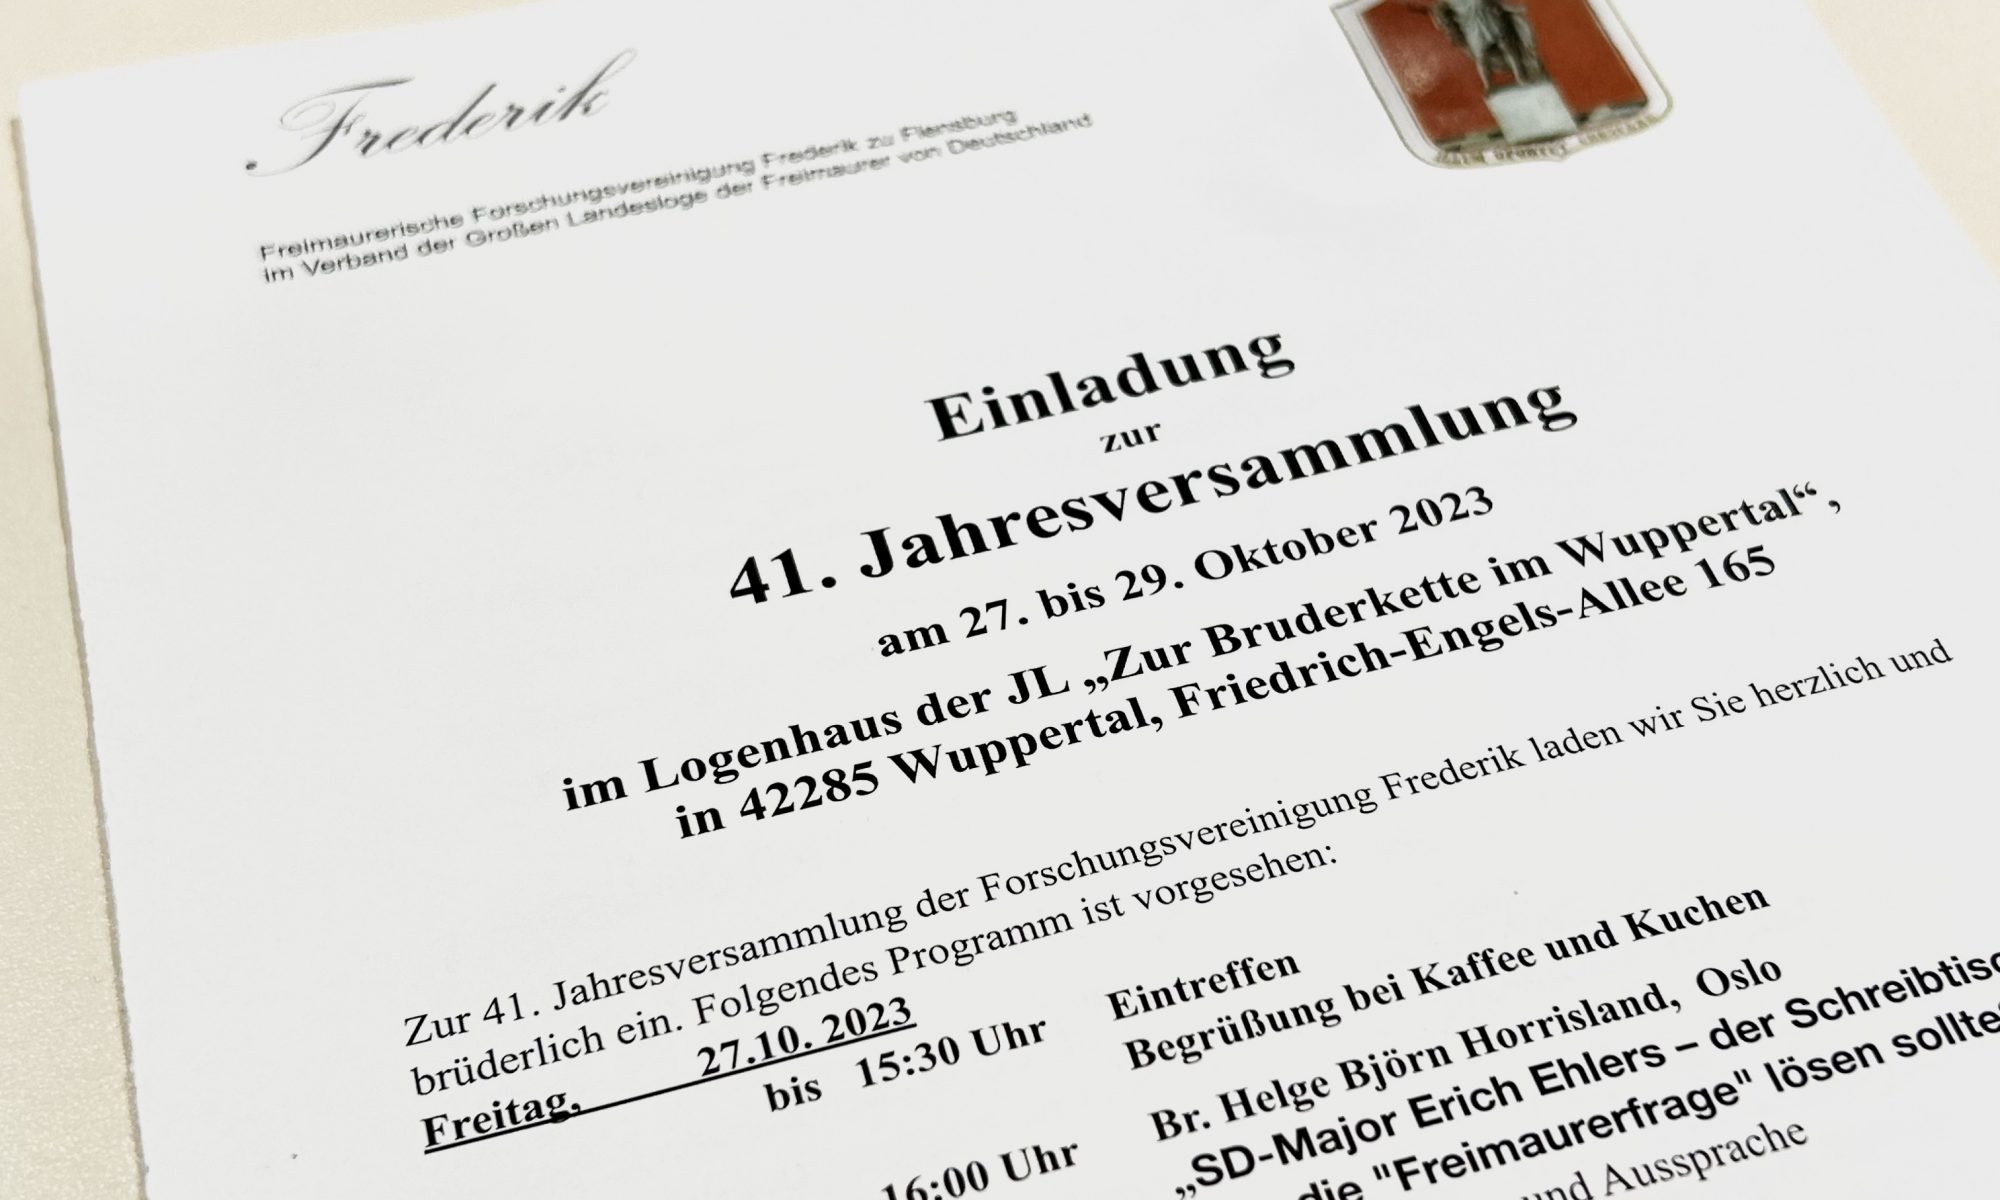 Freimaurerische Forschungsvereinigung Frederik: Jahrestagung „41 Jahre Frederik“, 27.-29. Oktober 2023 im Wuppertaler Logenhaus